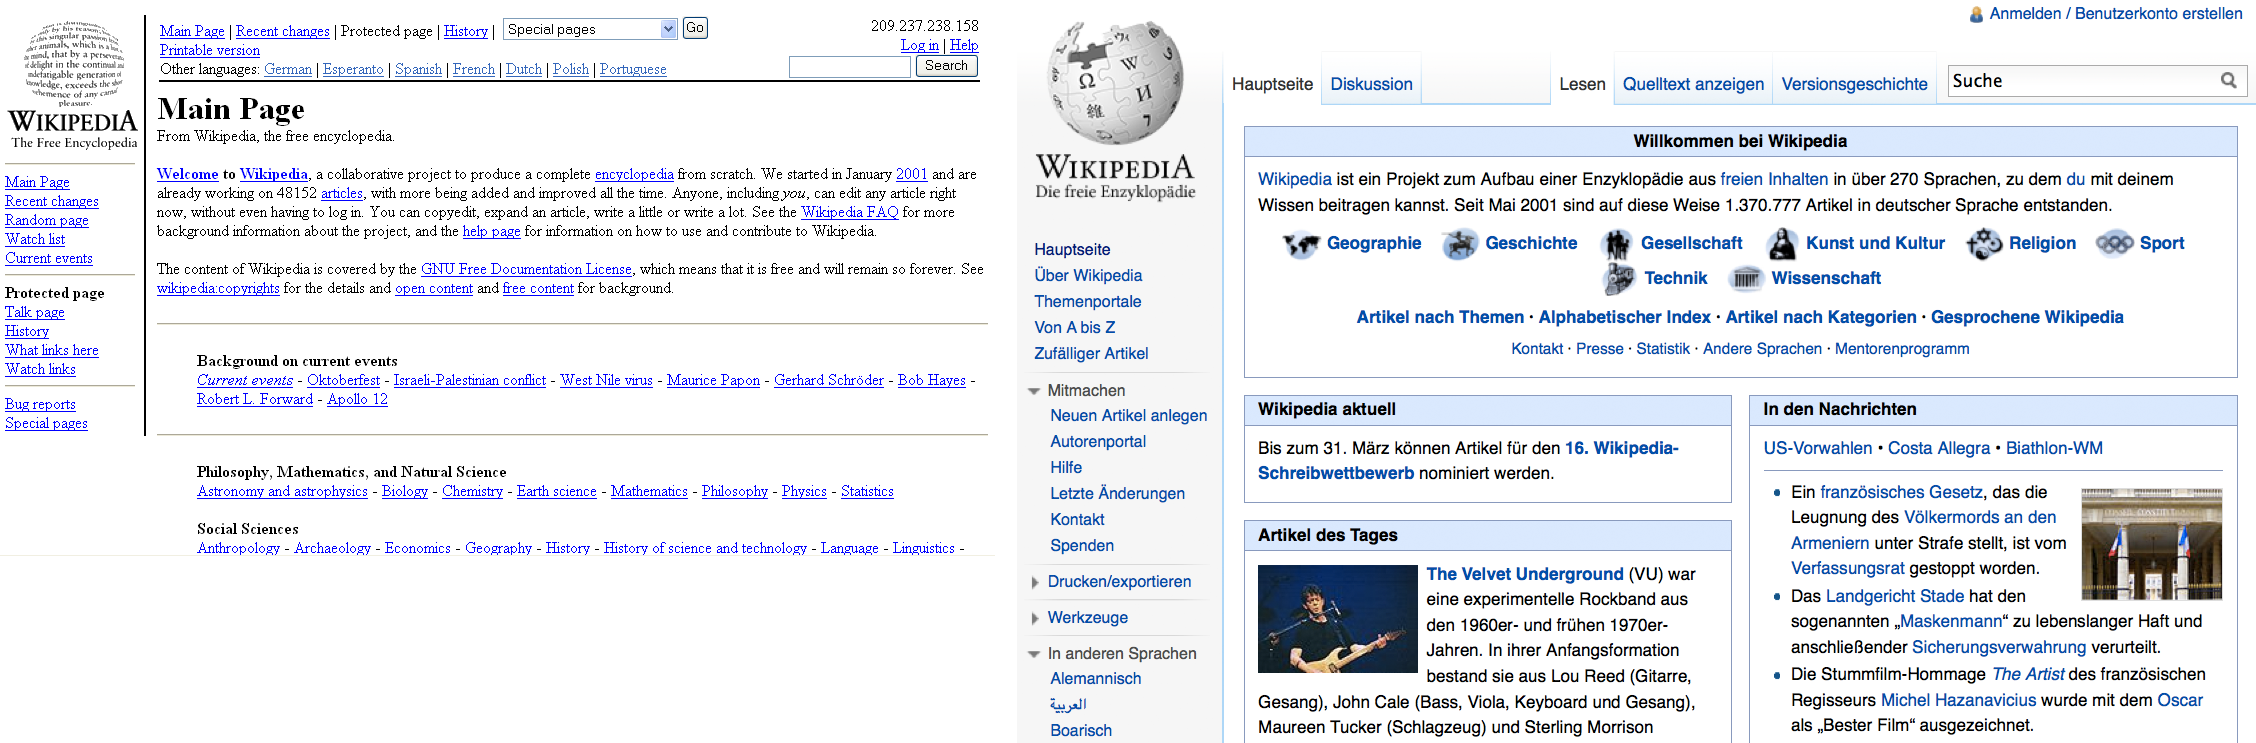 Abbildung: Wikipedia 2001 und 2012